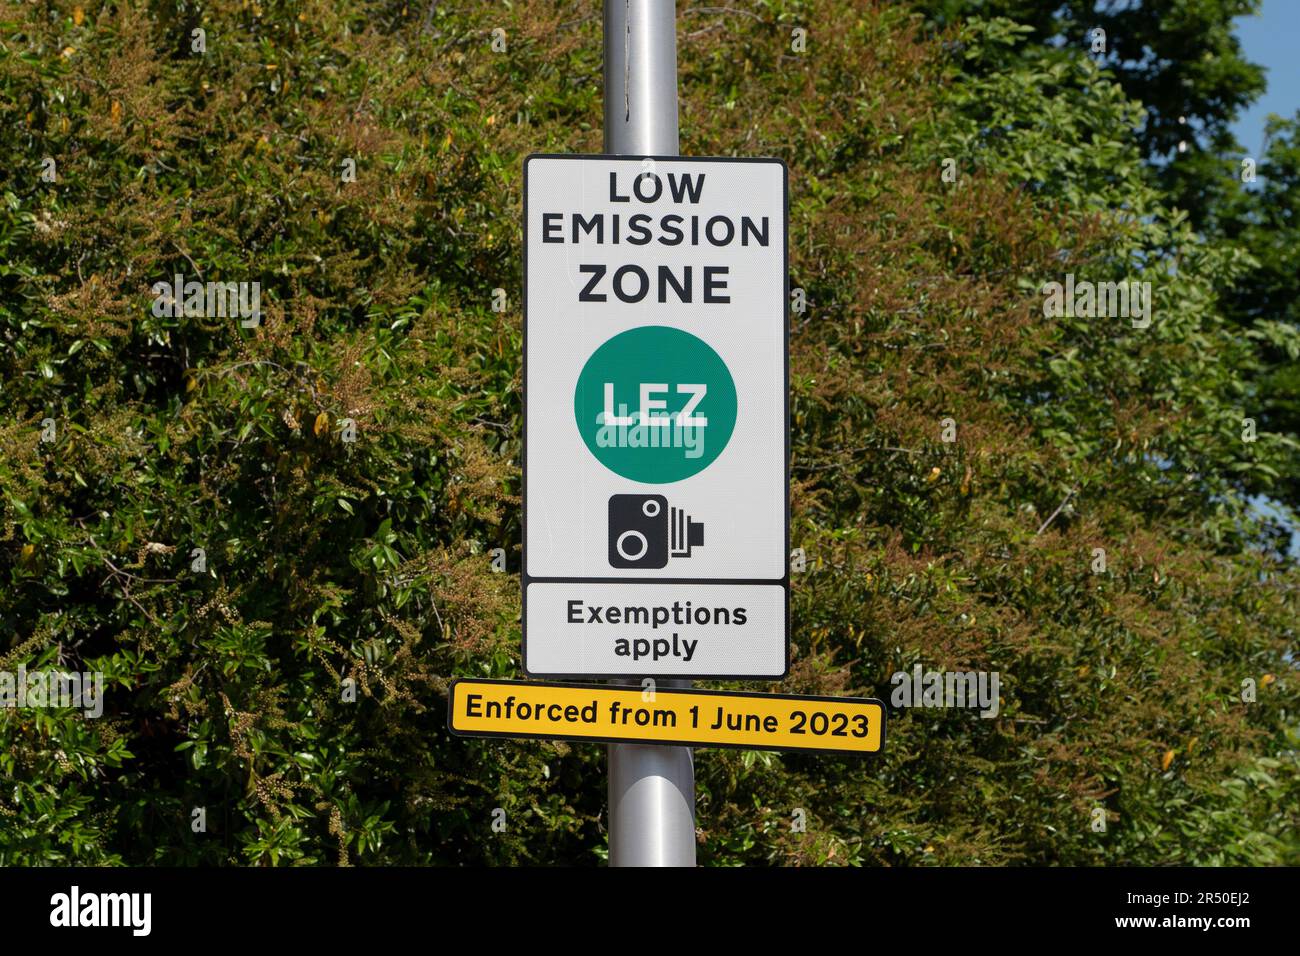 Panneau indiquant le début de LA ZONE LEZ ou de la zone à faible émission où des voitures plus anciennes et plus polluantes peuvent être condamnées à une amende s'ils entrent dans le centre-ville de Glasgow, en Écosse, au Royaume-Uni Banque D'Images